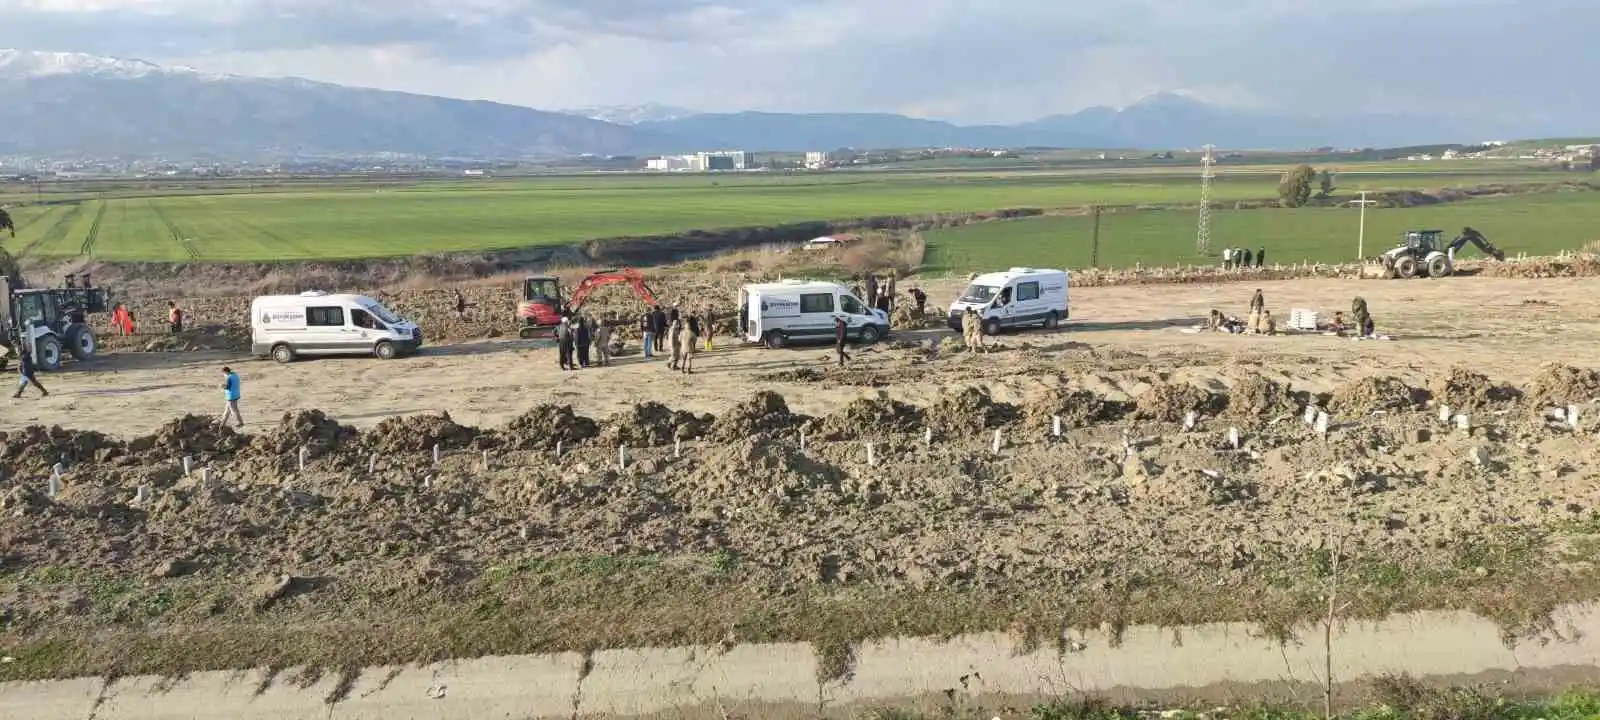 Depremde hayatını kaybedenler toplu mezarlıkta son yolculuğuna uğurlanıyor
